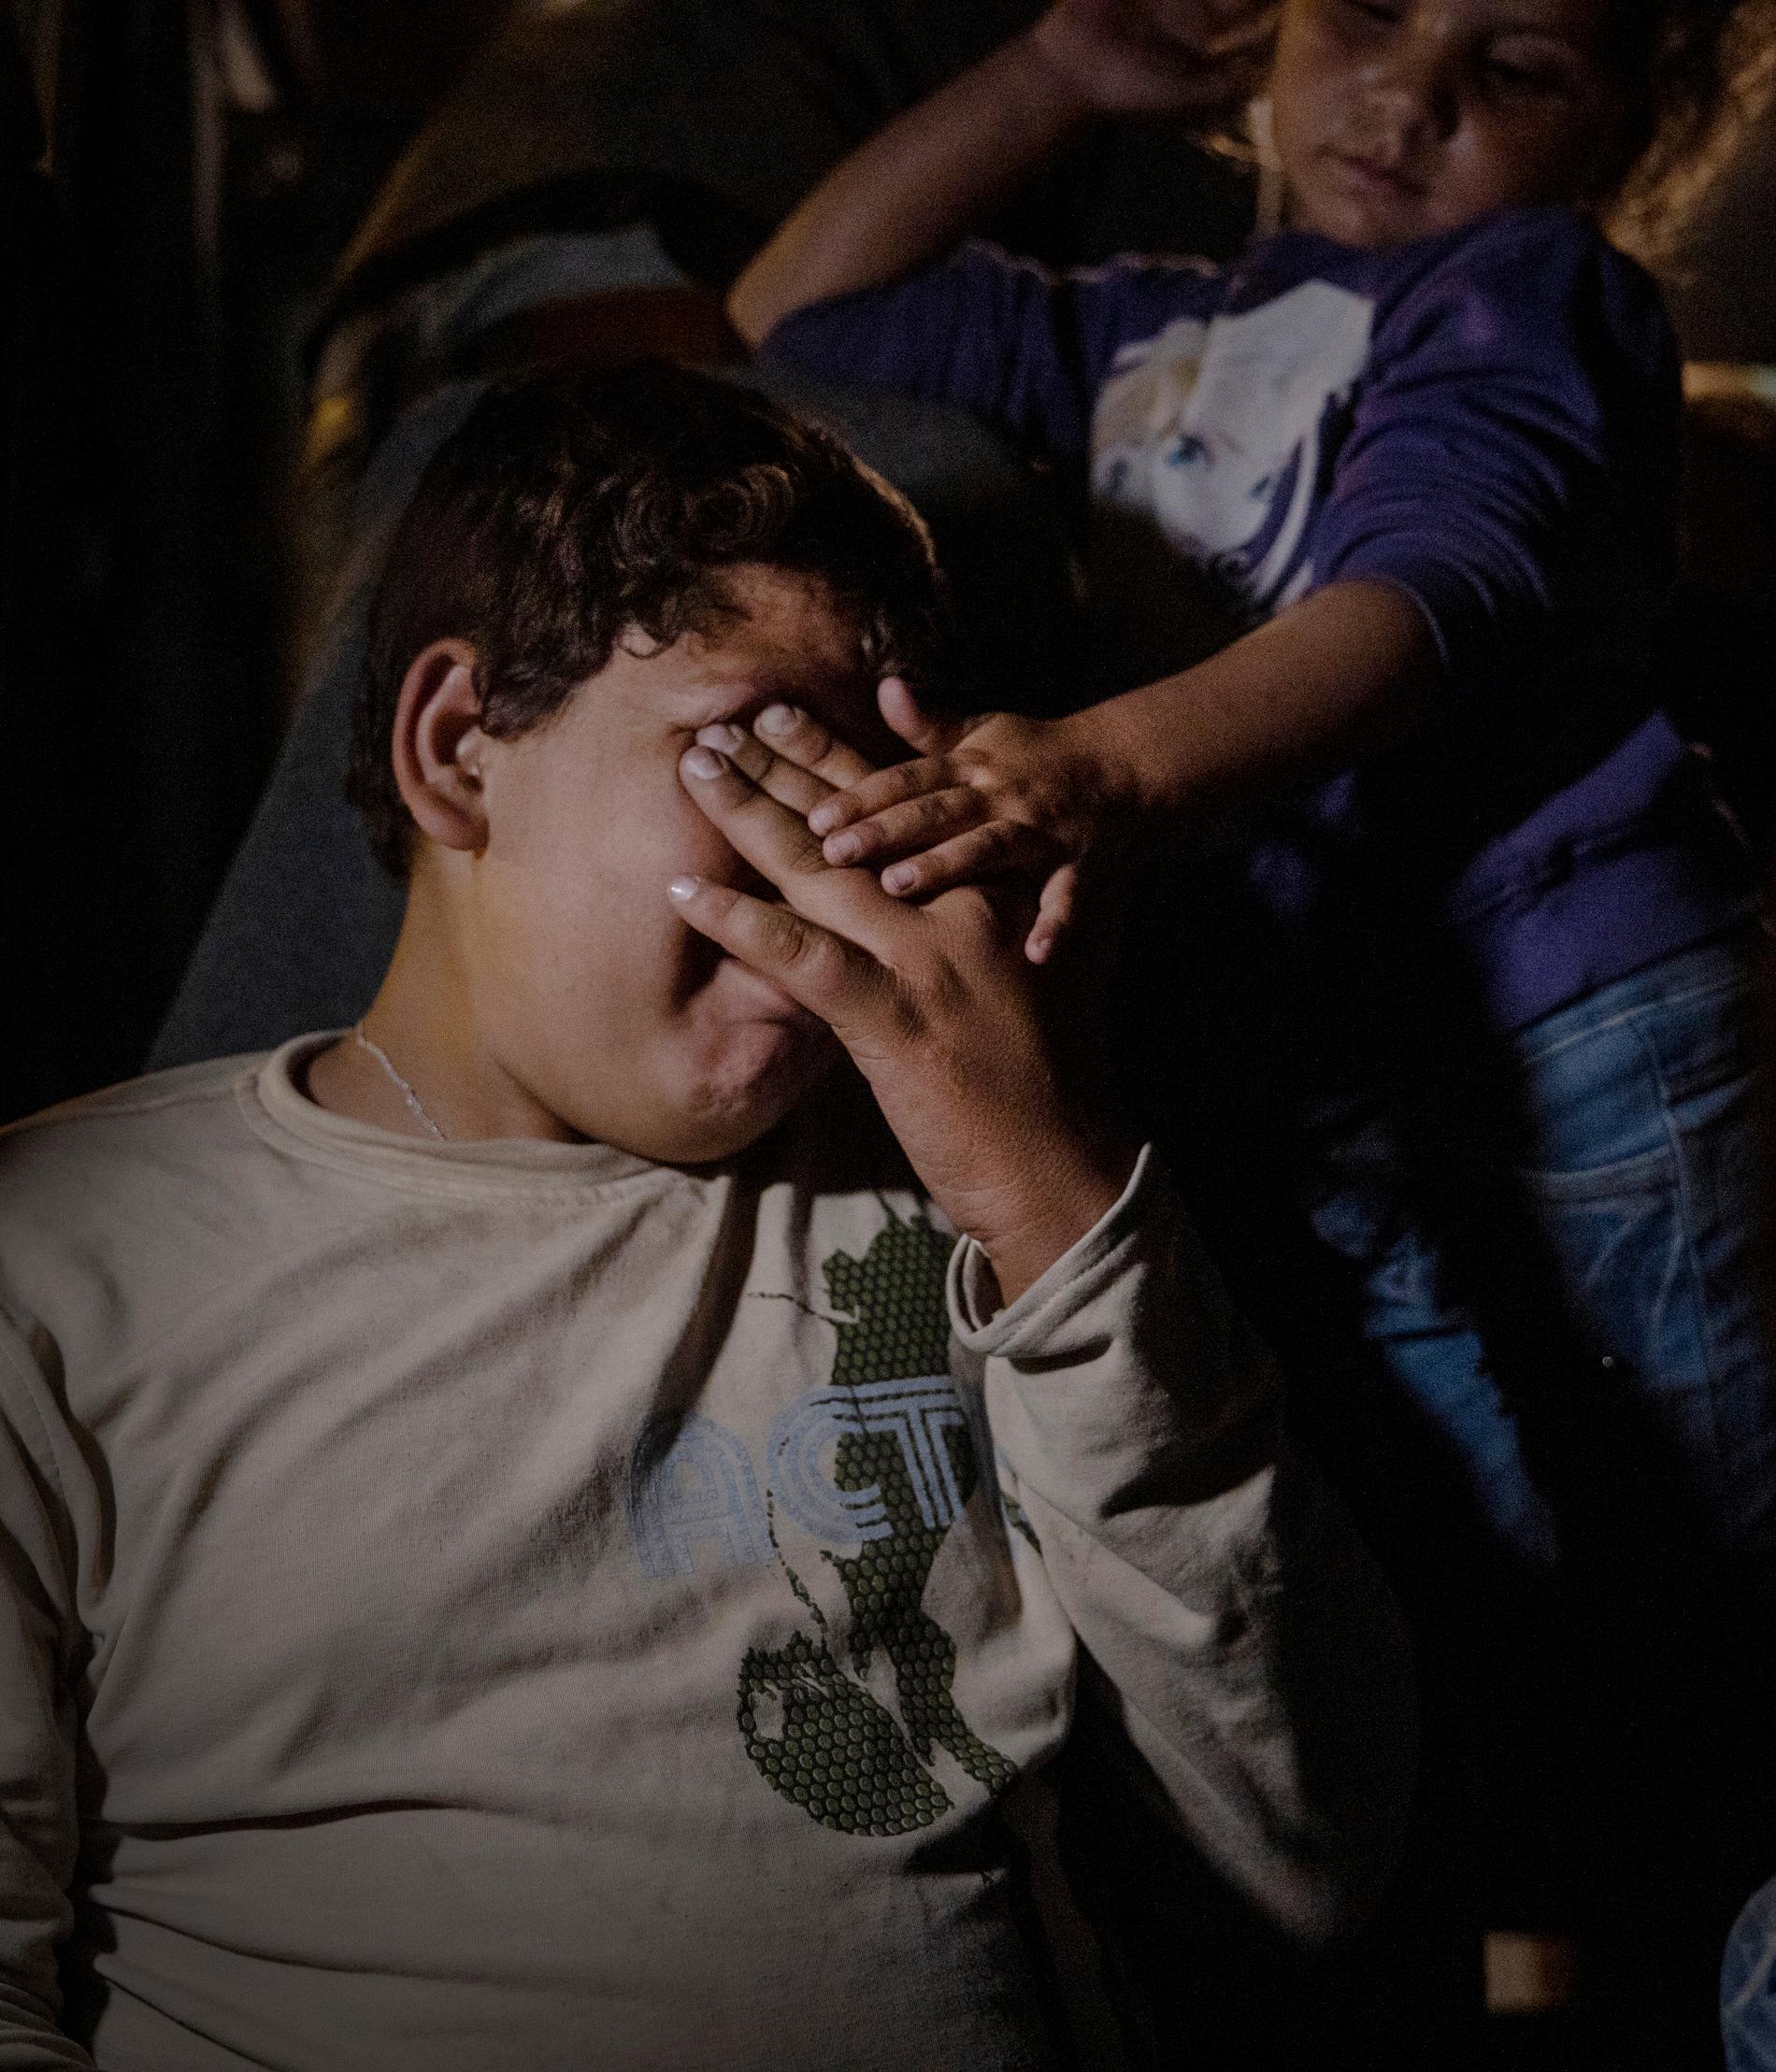 Irak/Kurdistan Ahmeds mamma och bror hette Elham och Bozan, För några dagar sedan blev de begravda i rasmassorna i byn Sari-Kani i norra Syrien när Turkiet bombade området. Nu sitter han ensam på en buss och väntar på att få en sovplats i flyktinglägret Bardarash i Irak. När han berättar om sin mamma brister han ut i gråt. En ung flicka bredvid lägger sin hand på hans och försöker ge tröst. Över 200 000 människor har tvingats fly sina hem sedan Turkiet inlett sin operation "Peace Spring" i norra Syrien.